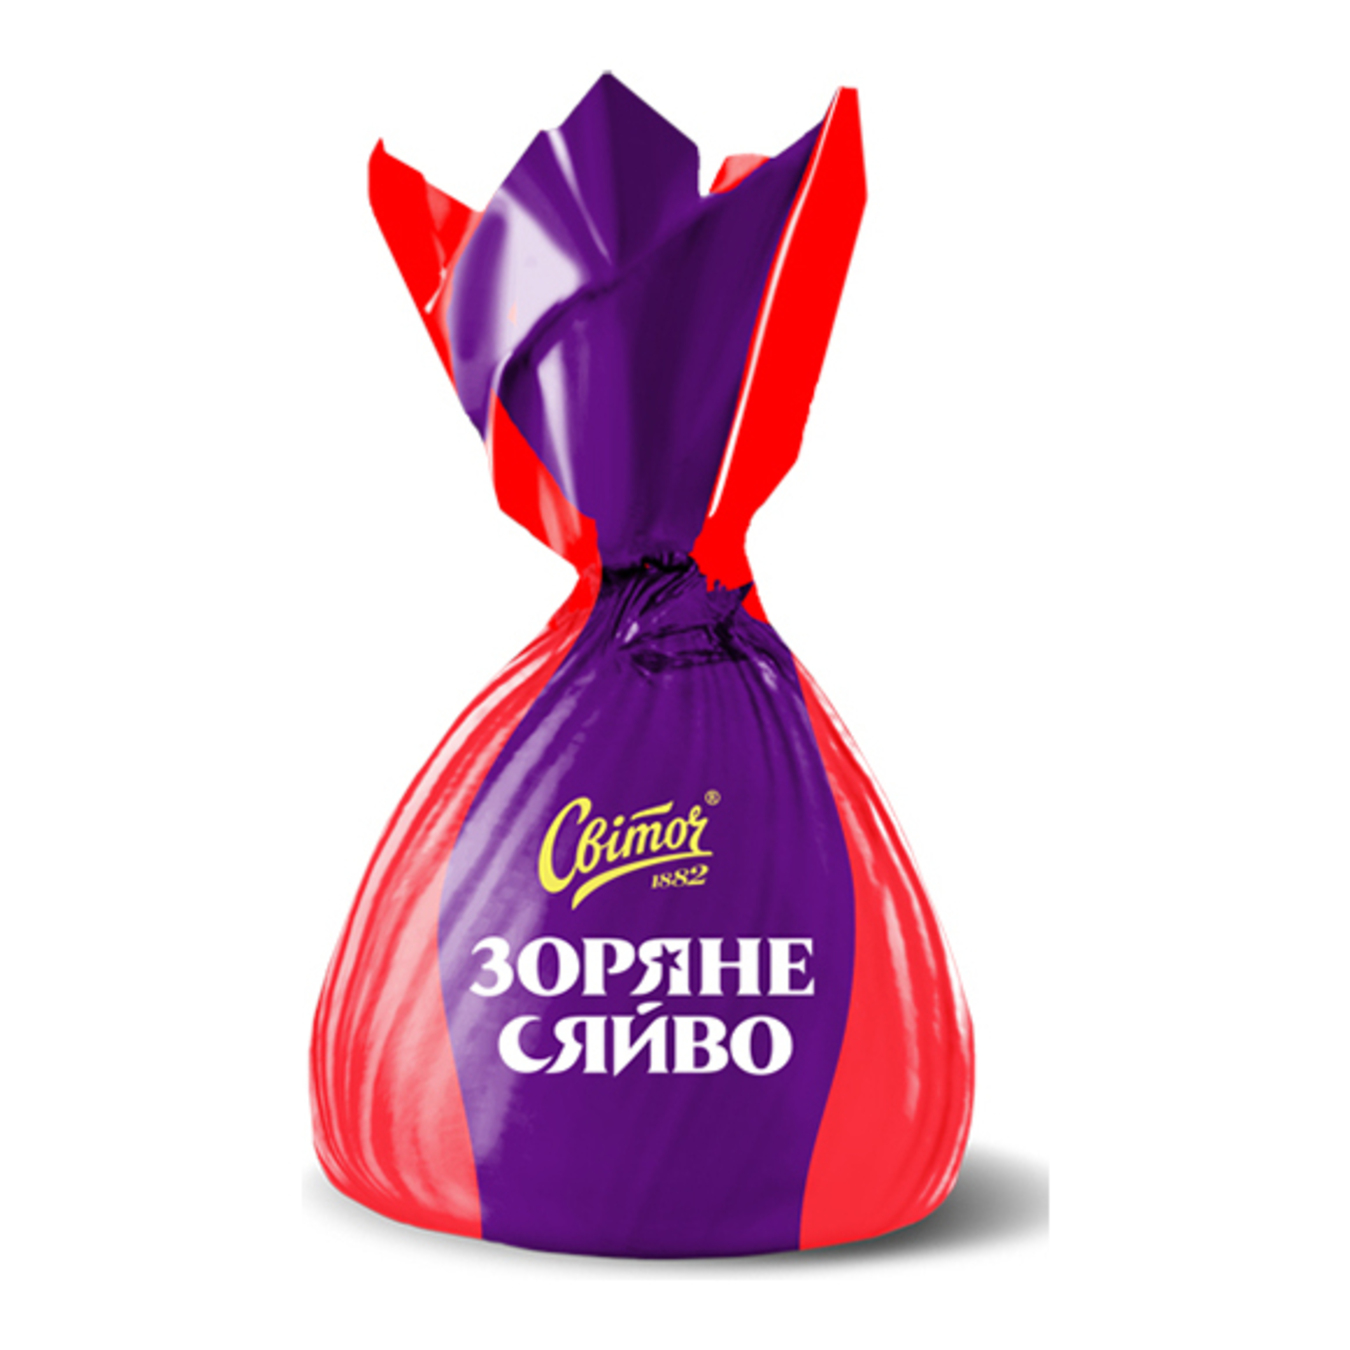 Svitoch Zoriane Siaivo sharing sweets